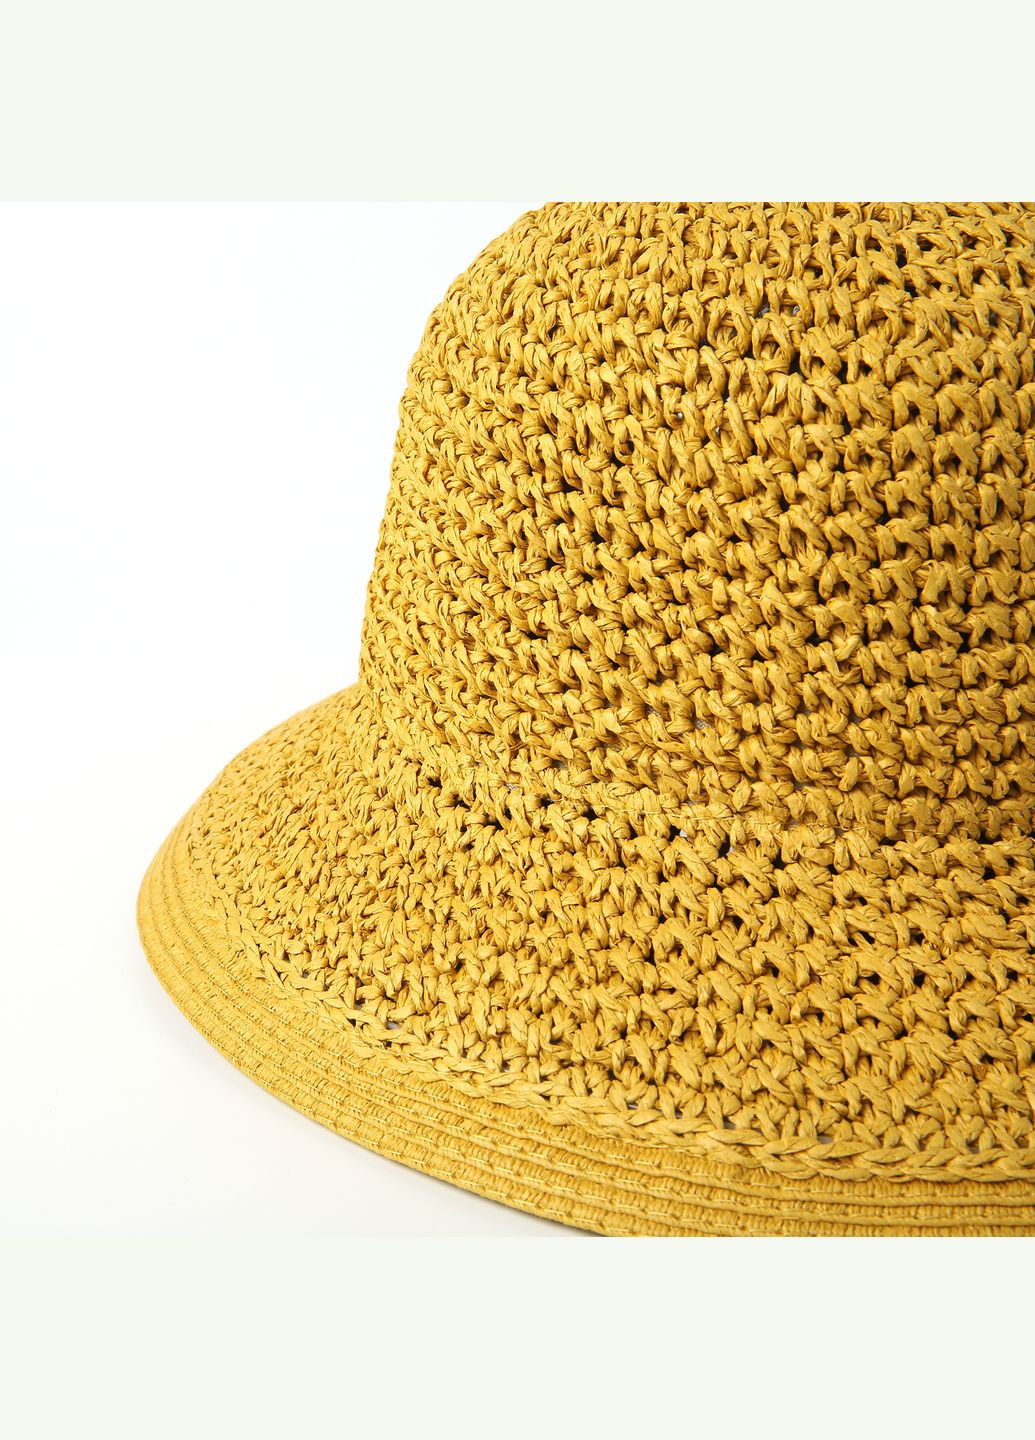 Шляпа с маленькими полями женская бумага желтая CORA LuckyLOOK 376-848 (289478303)